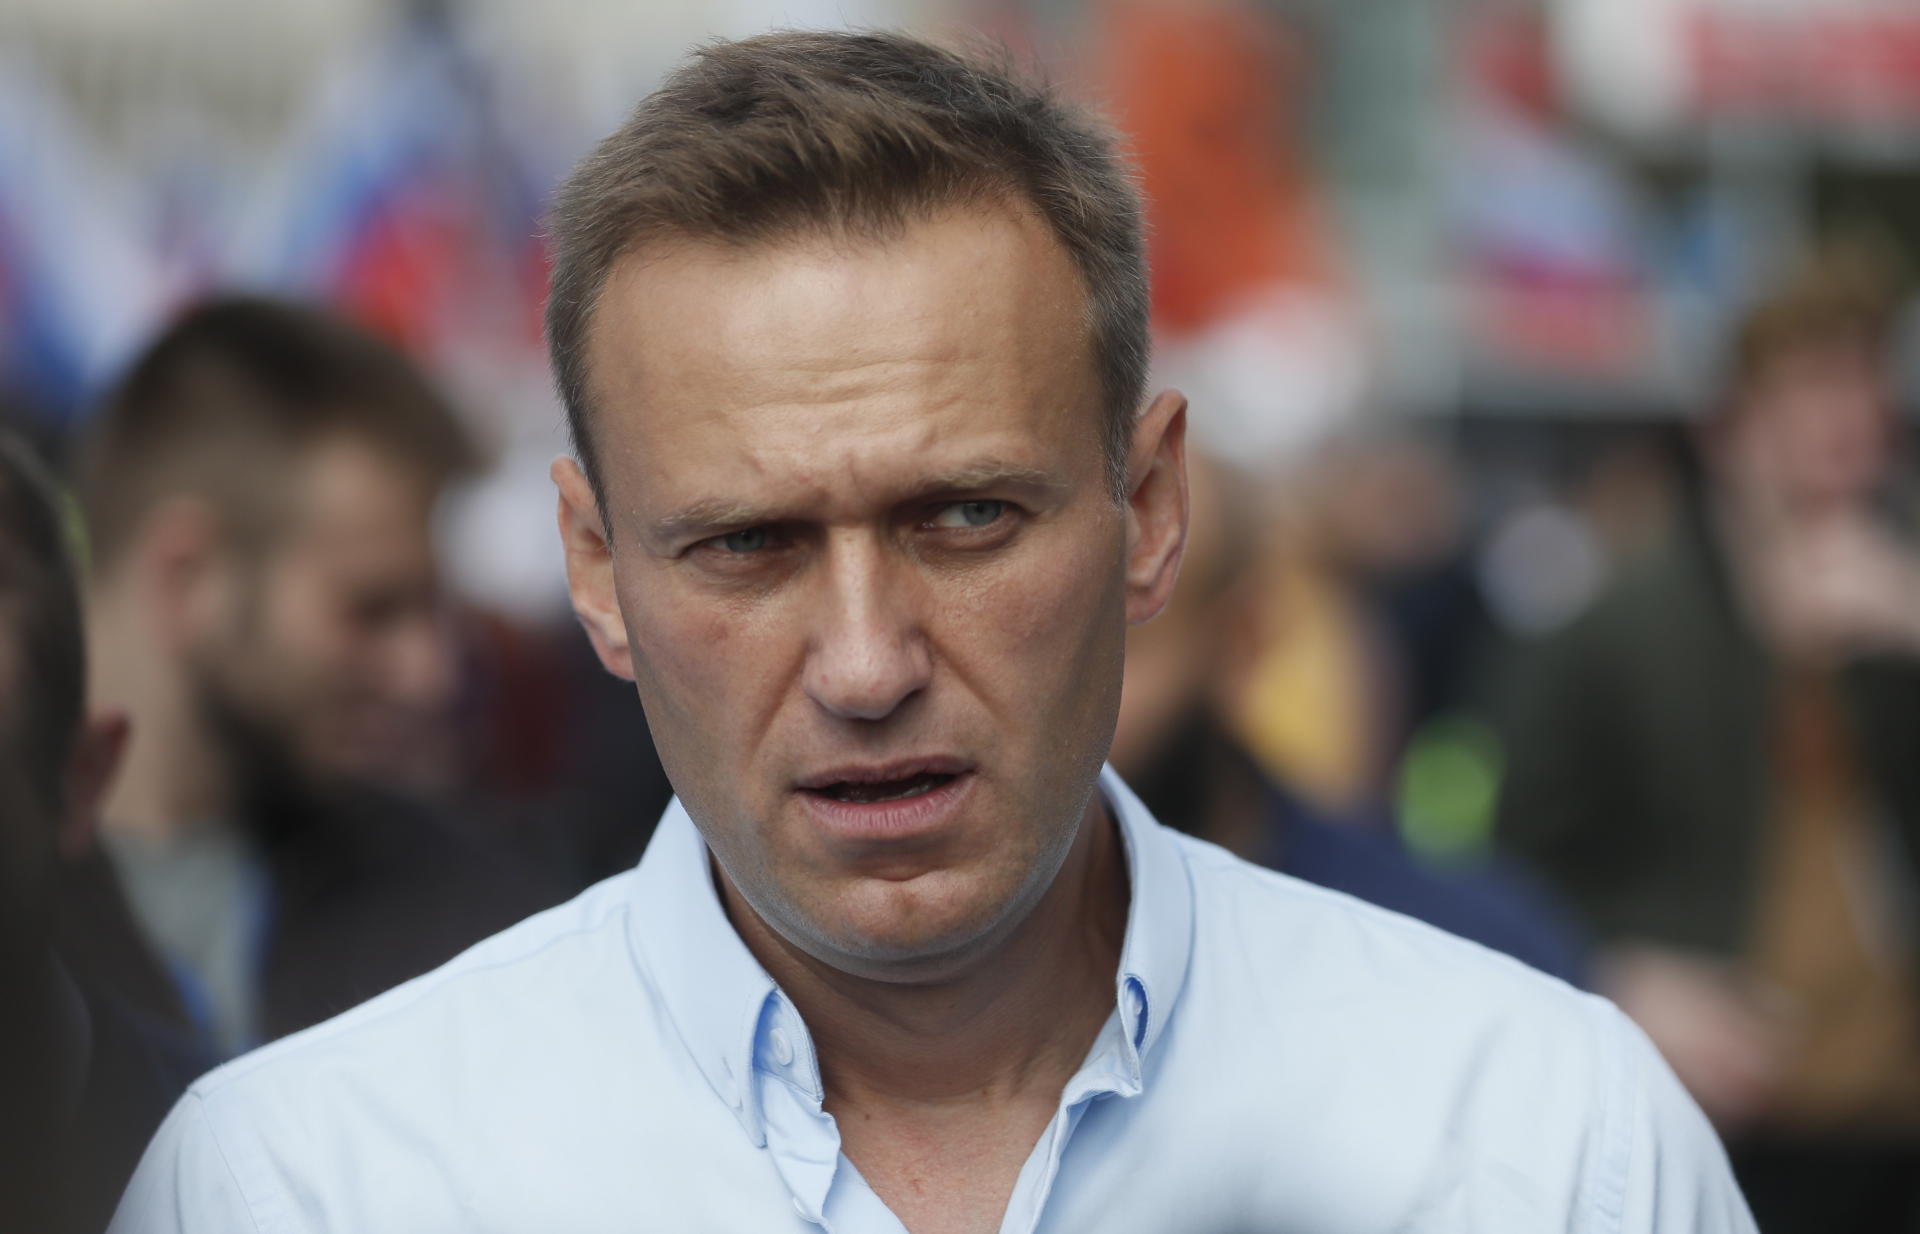 L'opposant Alexeï Navalny accuse Poutine d'être «derrière» son empoisonnement